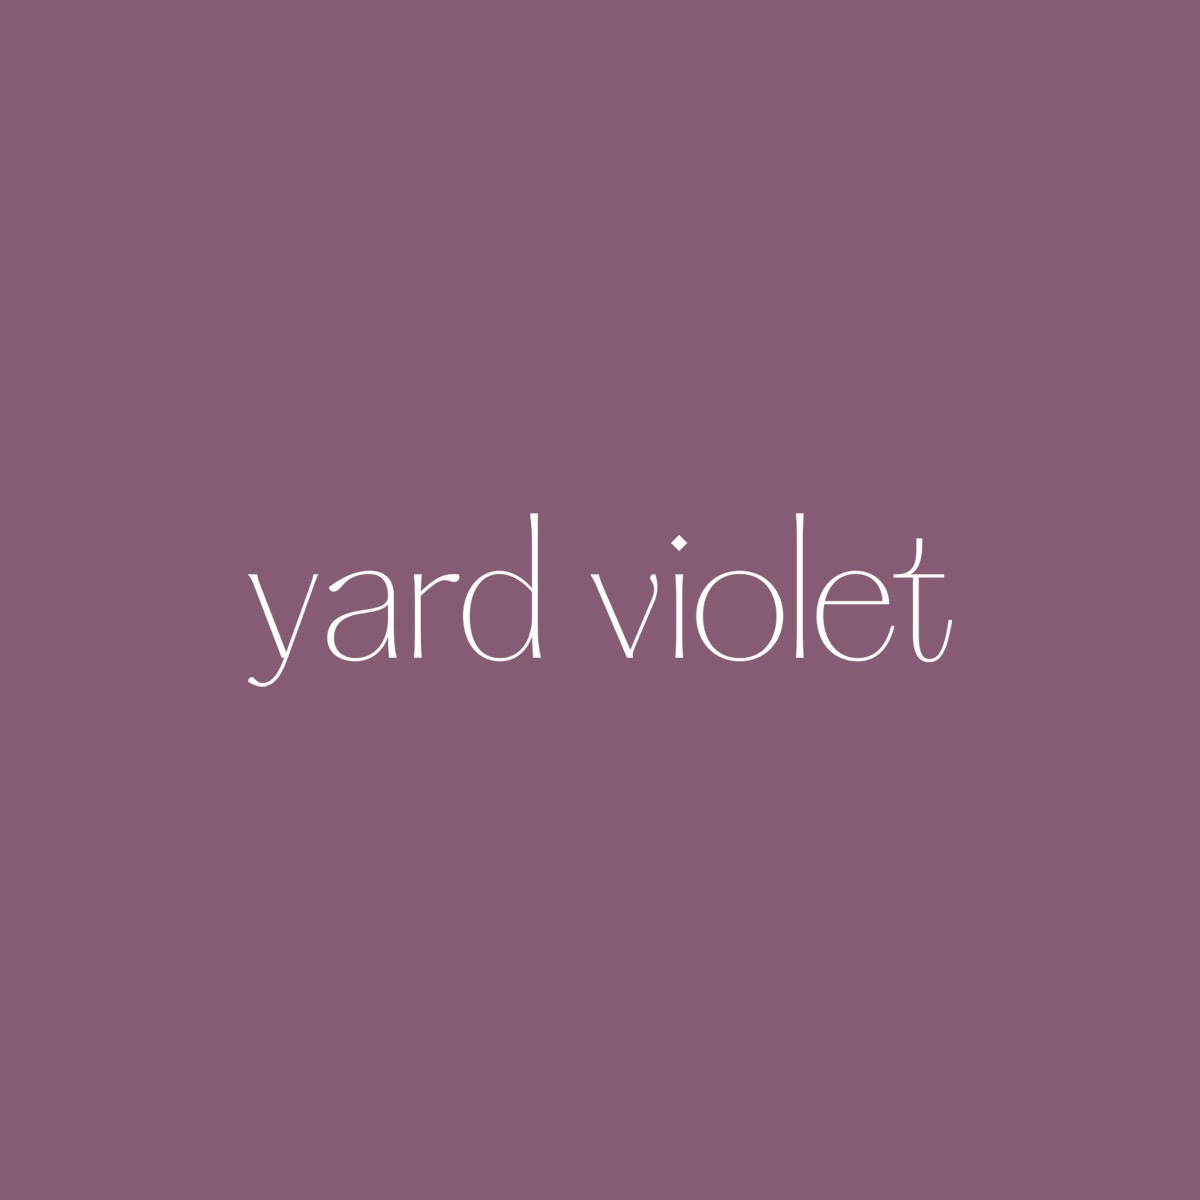 Artwork for yard violet